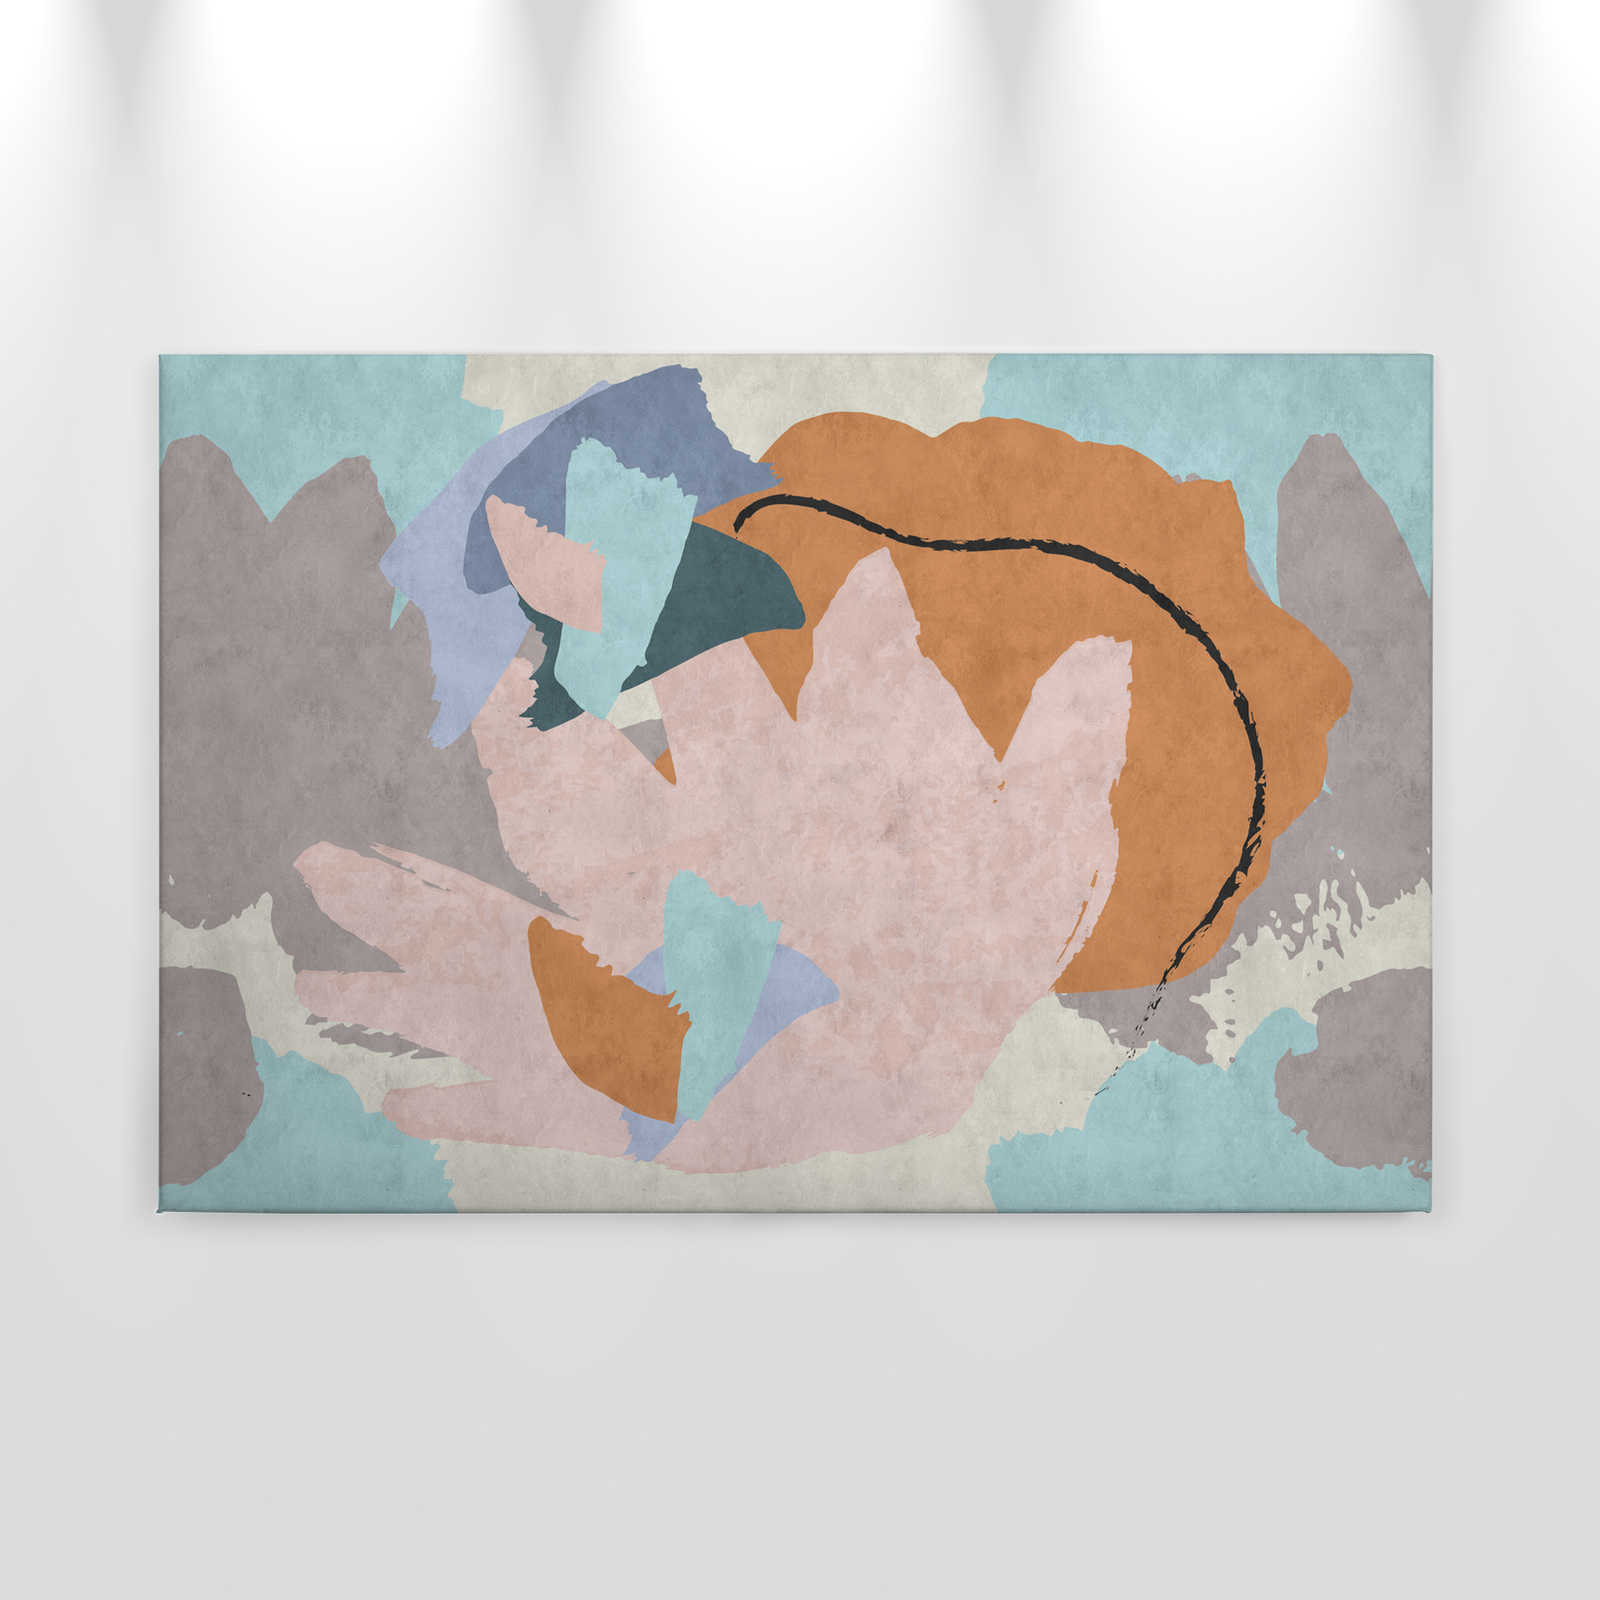             Bloemrijkcollage 2 - modern canvas schilderij abstracte kunst in vloeipapier structuur - 0,90 m x 0,60 m
        